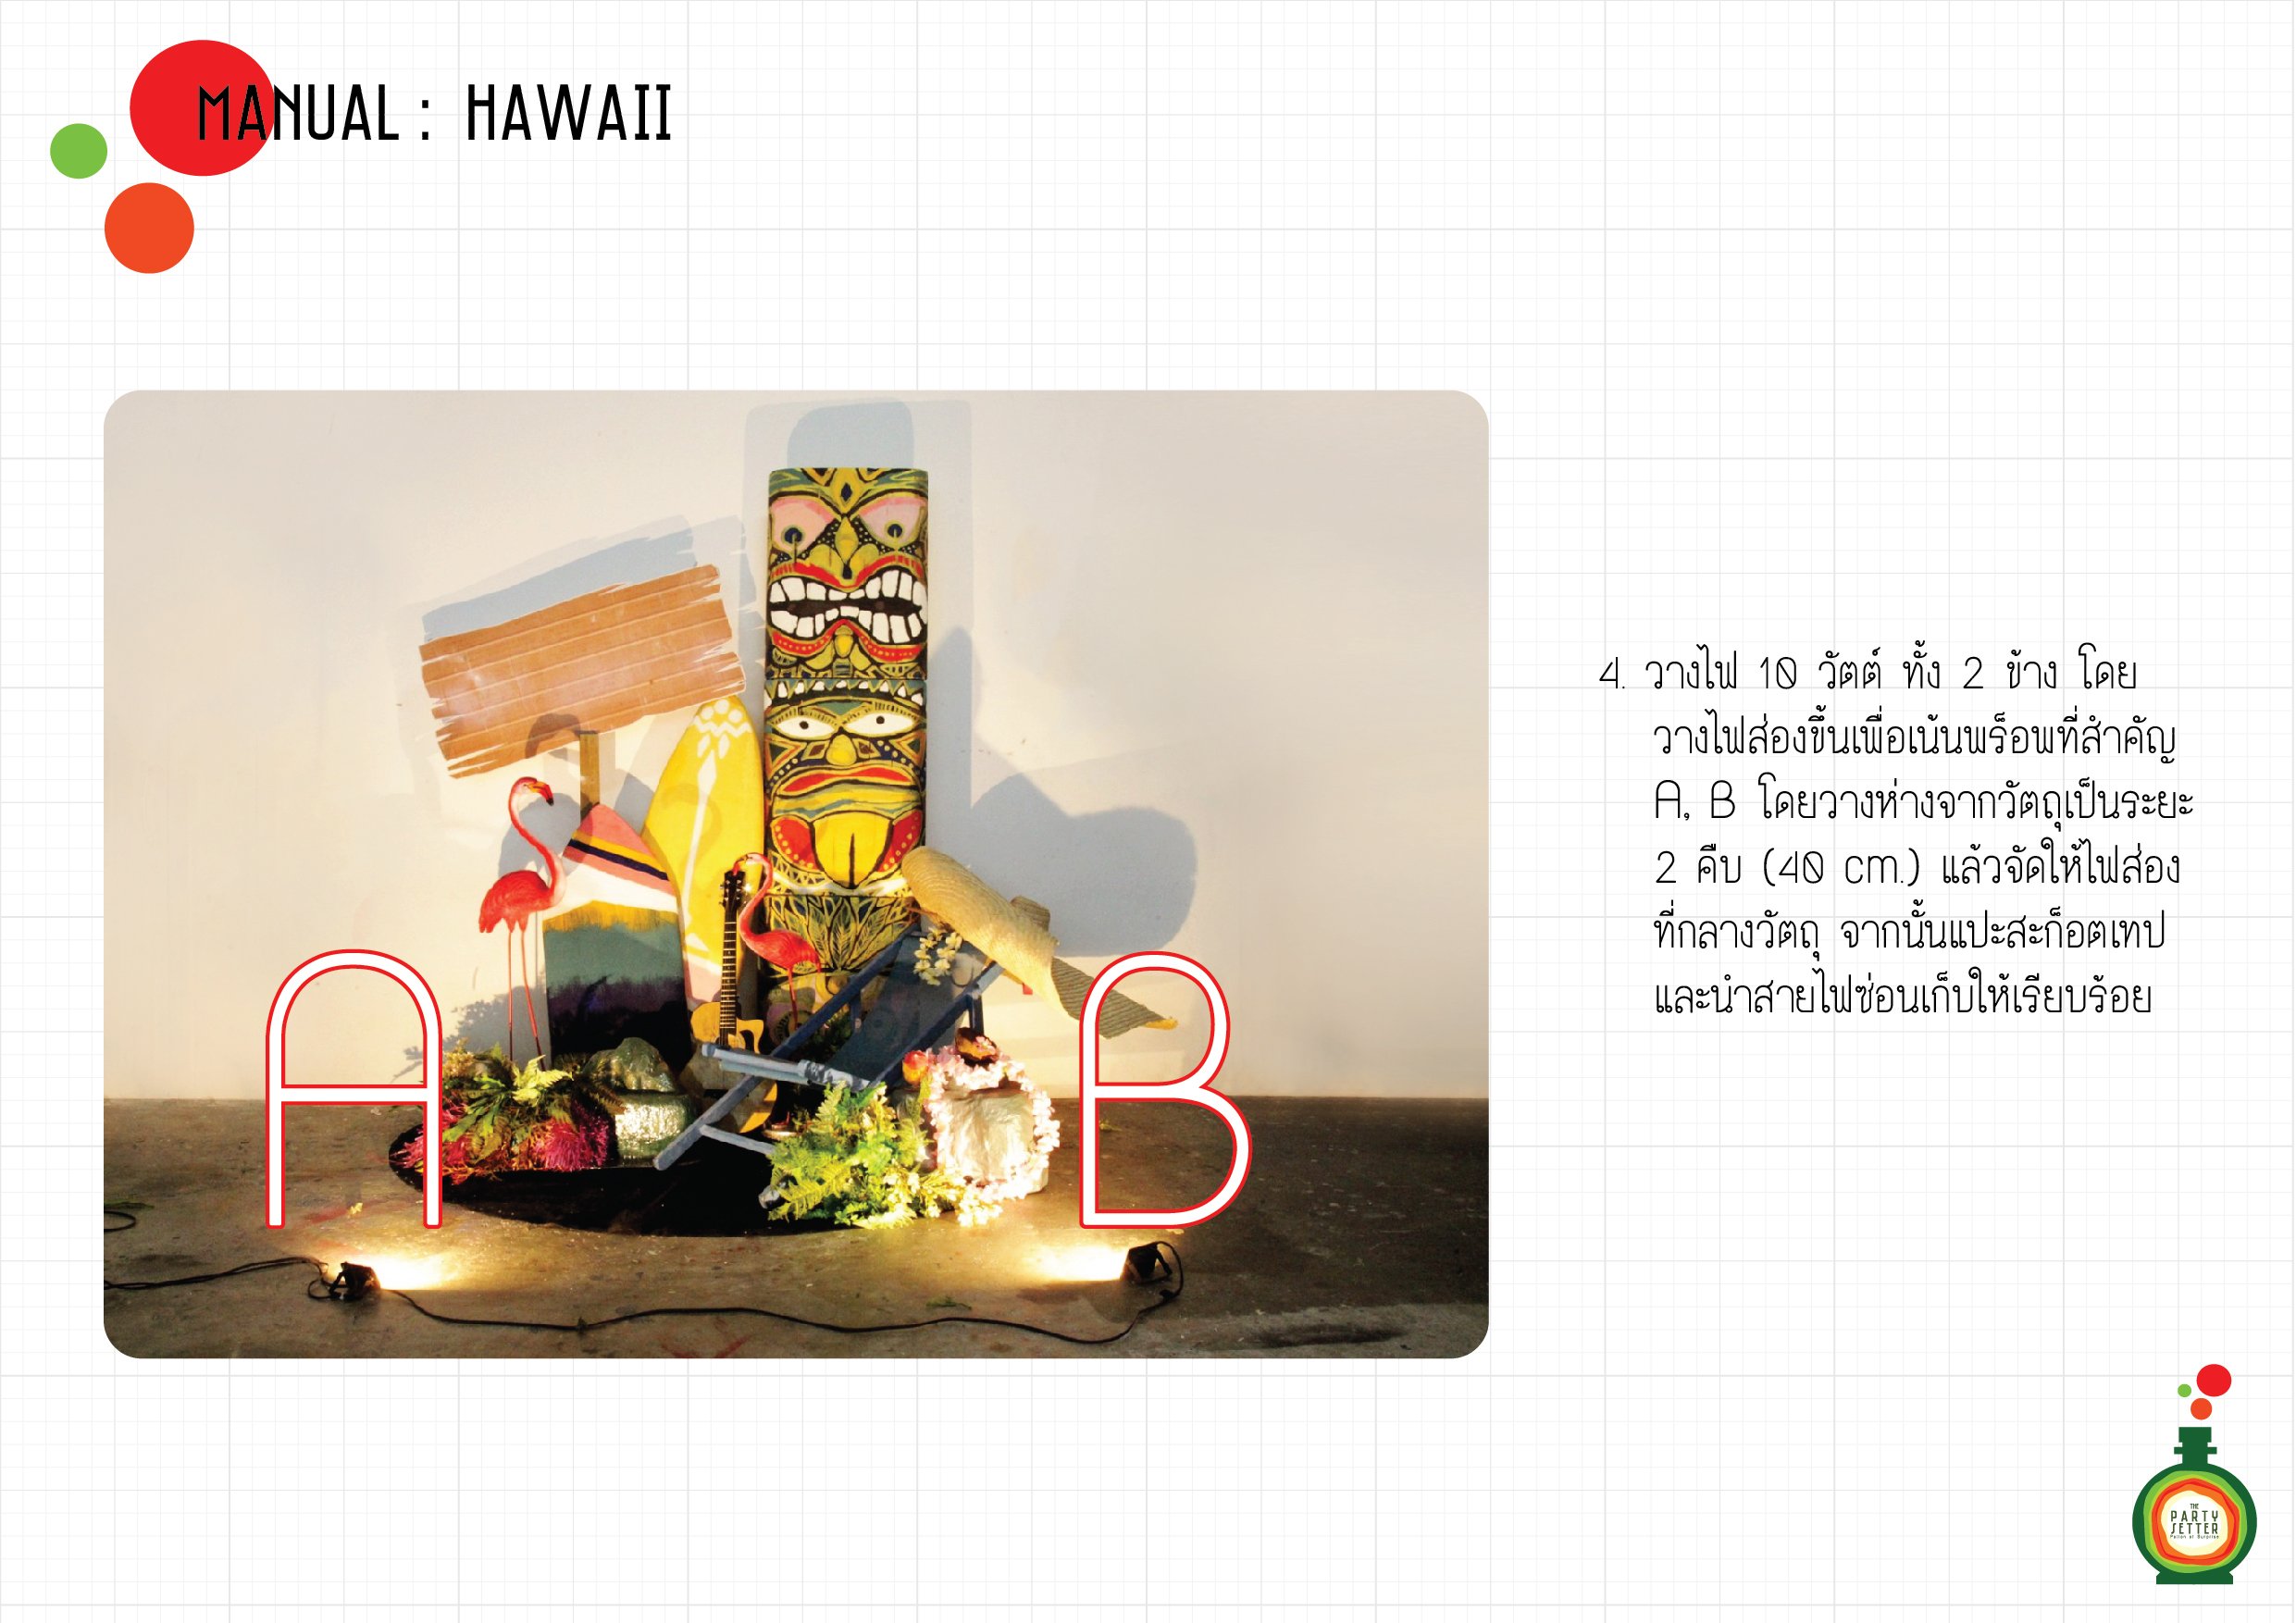 Manual_Hawaii-4-04-01.jpg